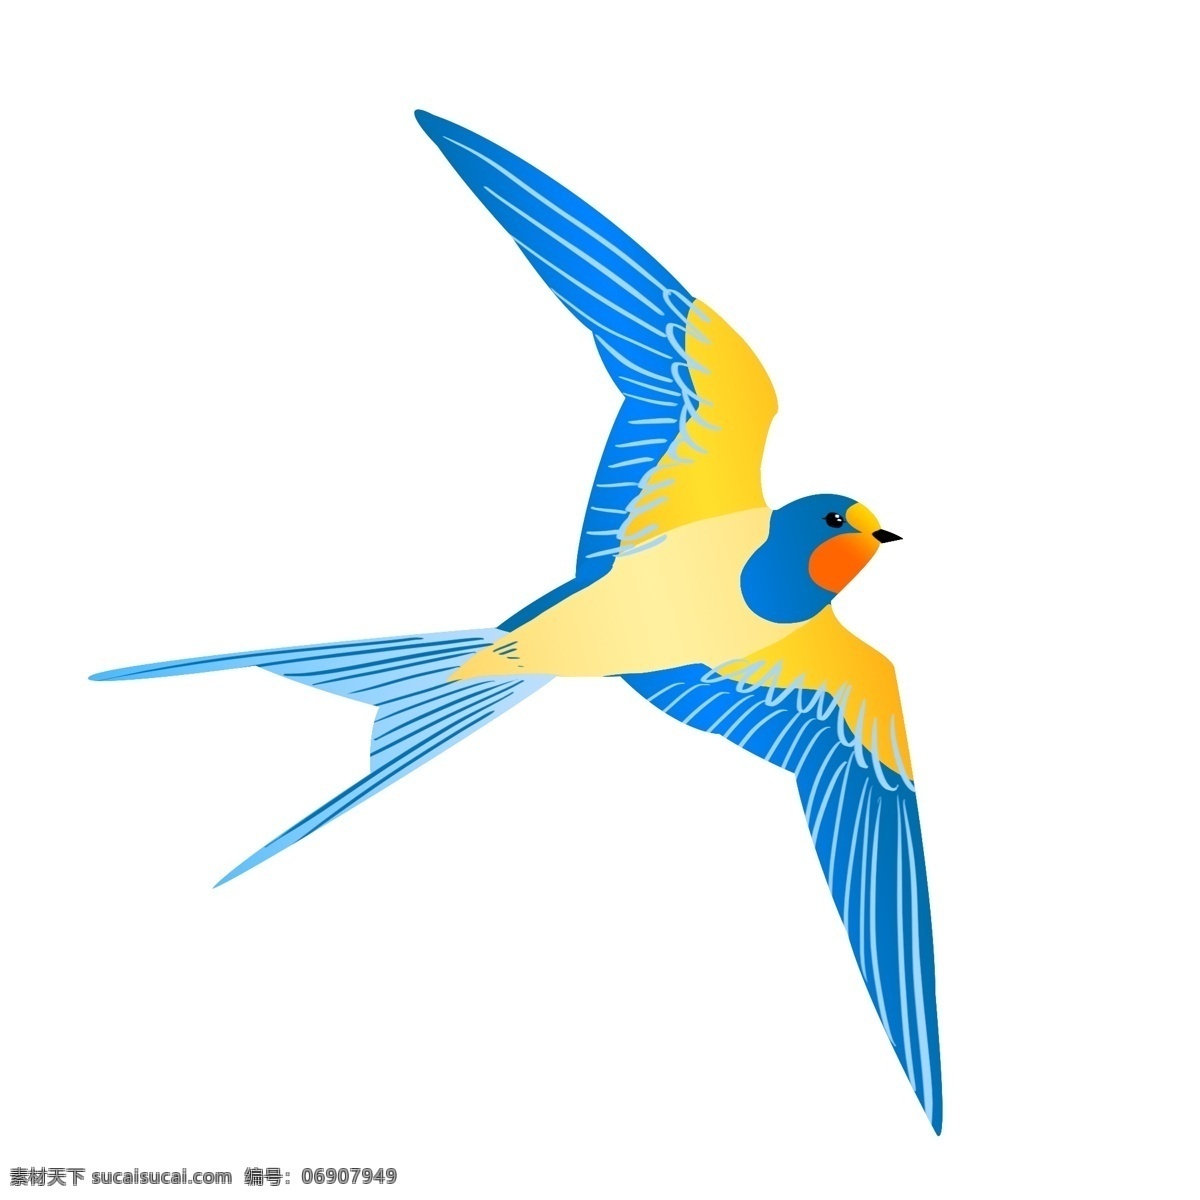 蓝色 飞行 燕子 插画 春天 春季 翅膀 动物 飞鸟 飞行的燕子 蓝色燕子 飞燕 飞翔的燕子 黄色羽毛 蓝色翅膀羽毛